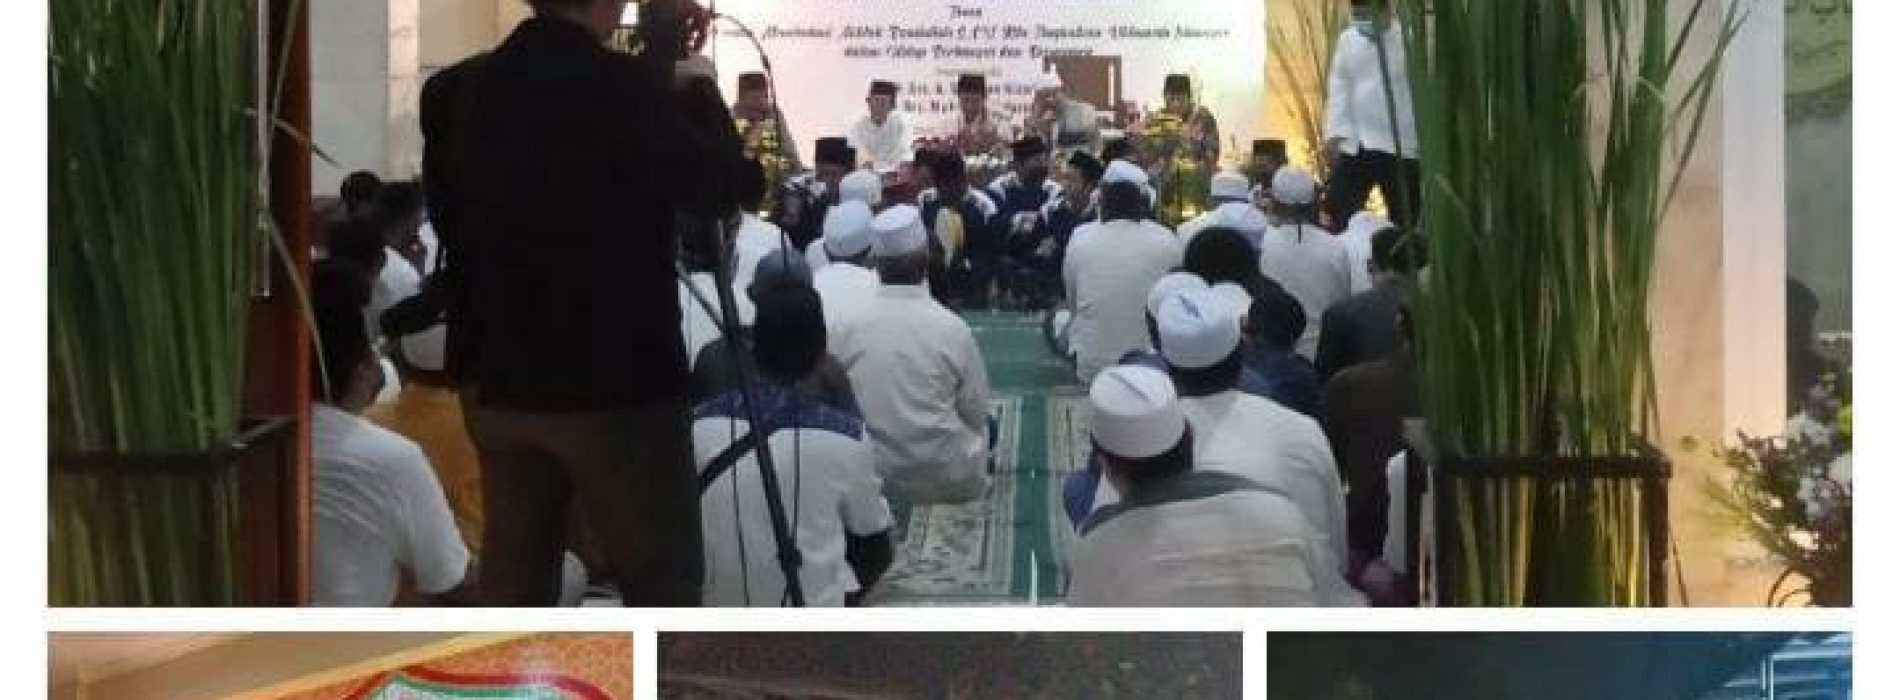 Sinergi 2 Komhan Dalam Pelaksanaan Maulid Nabi Muhammad SAW di Masjid Jami’ Al Barkah Pondok Pinang Kebayoran Lama Jaksel